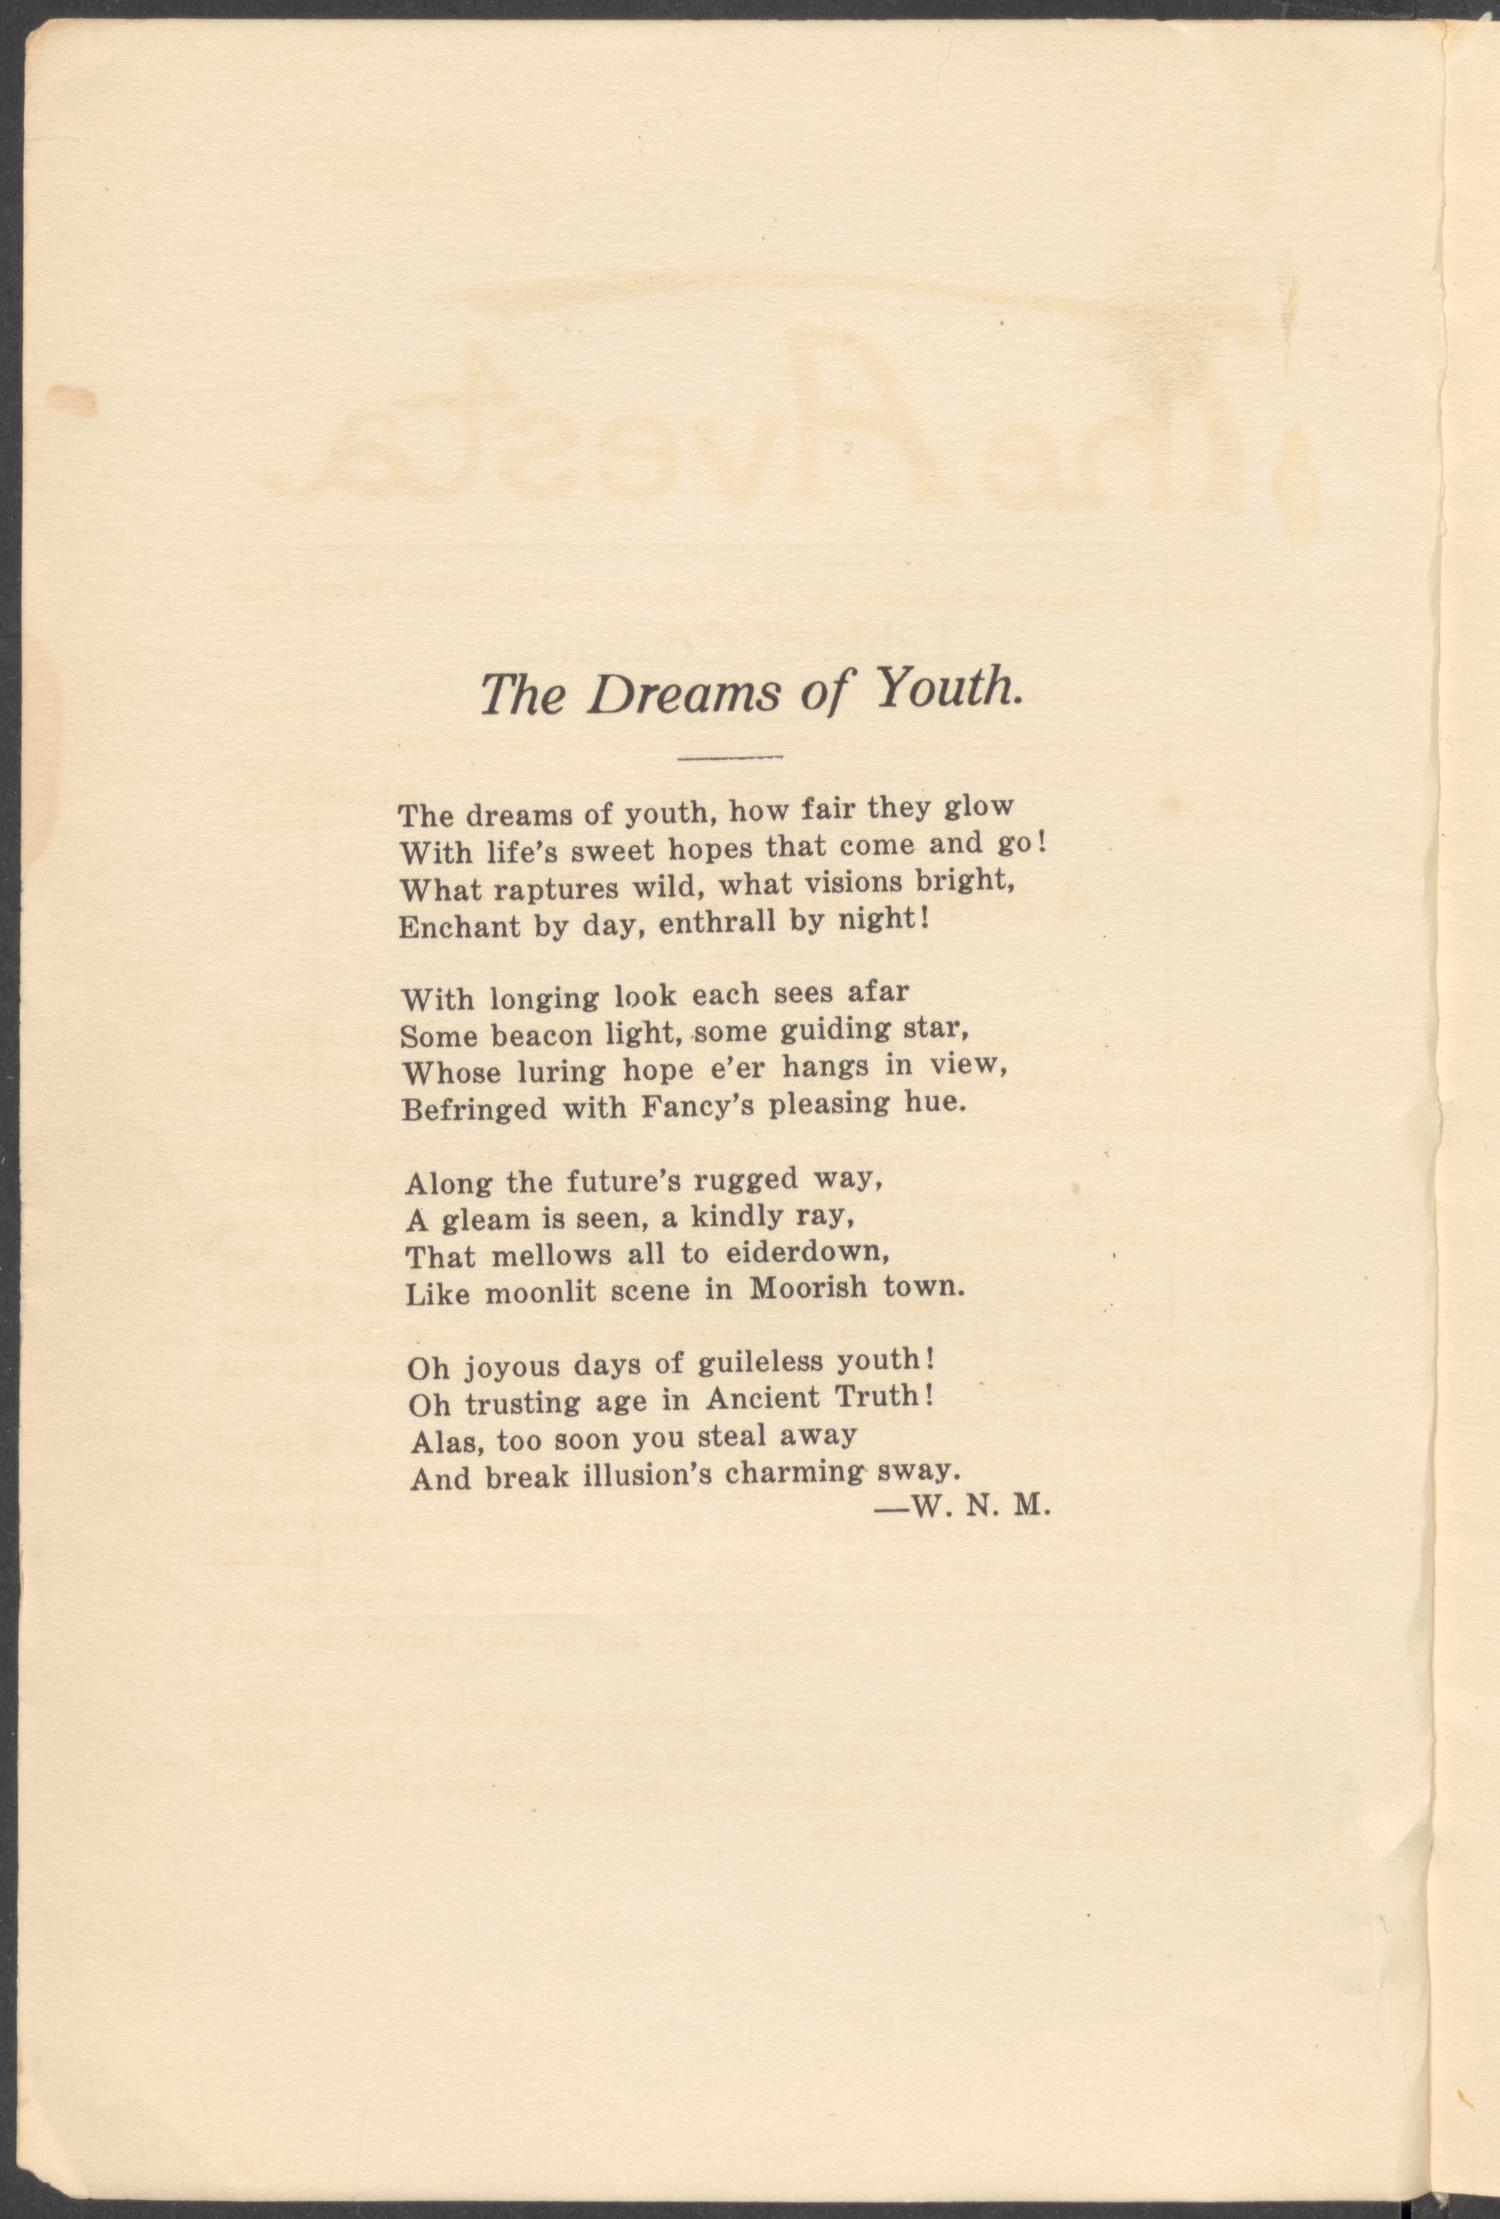 The Avesta, Volume 1, Number 4, Summer, 1917
                                                
                                                    2
                                                